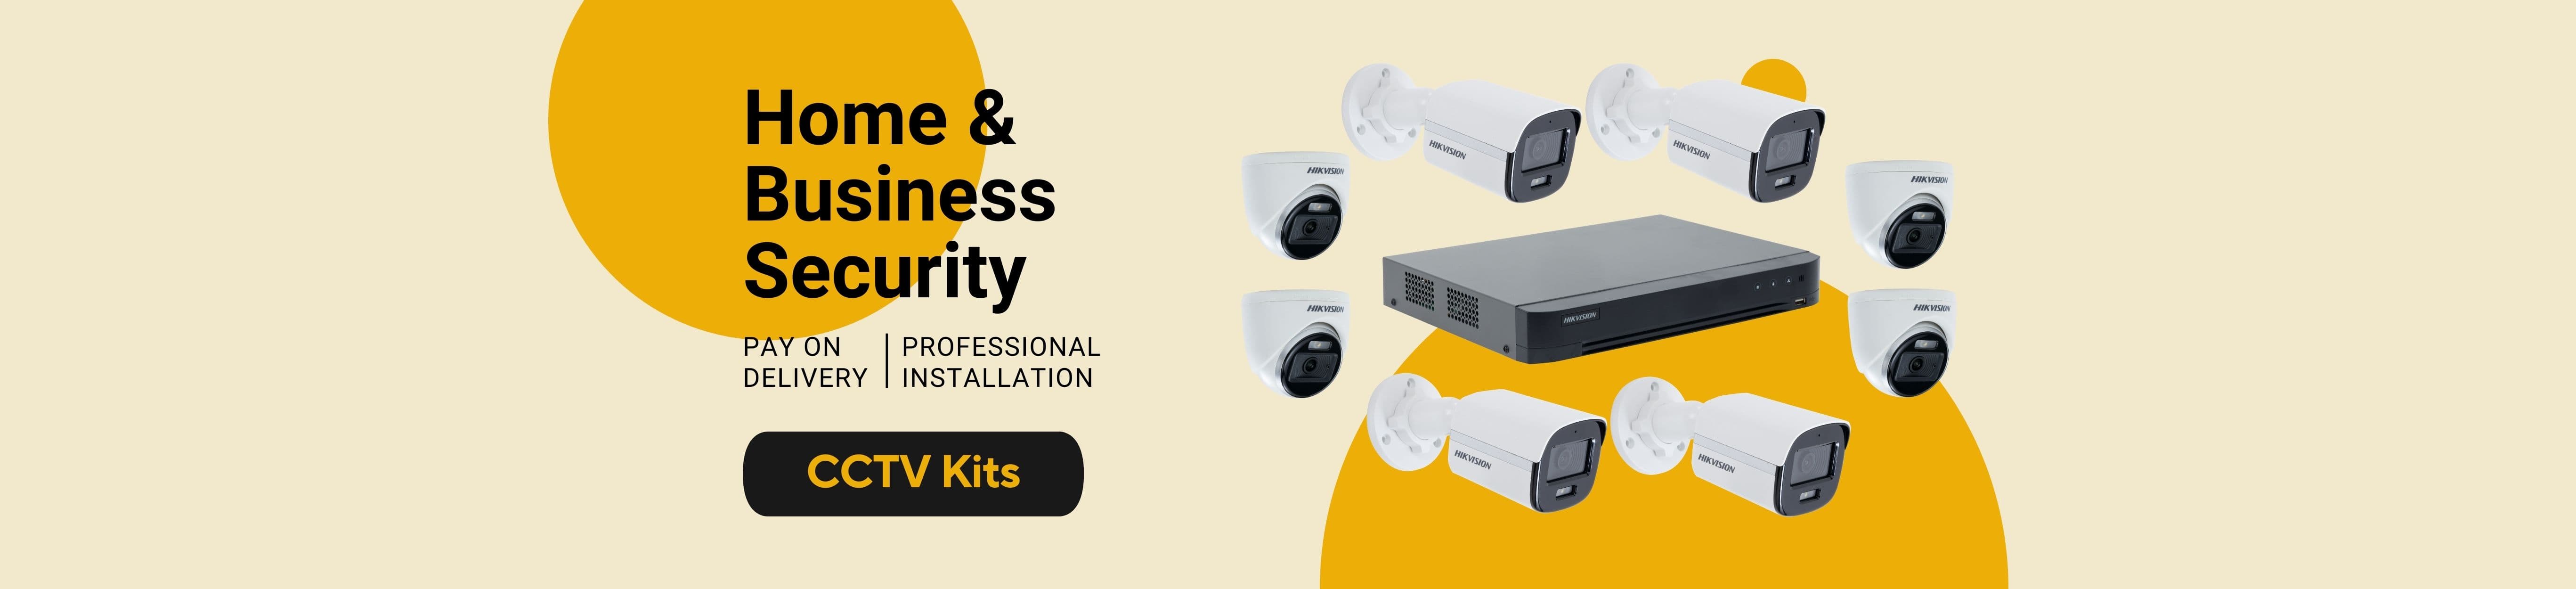 Shop-CCTV-Kits-Desktop-Website-Homepage-Banner